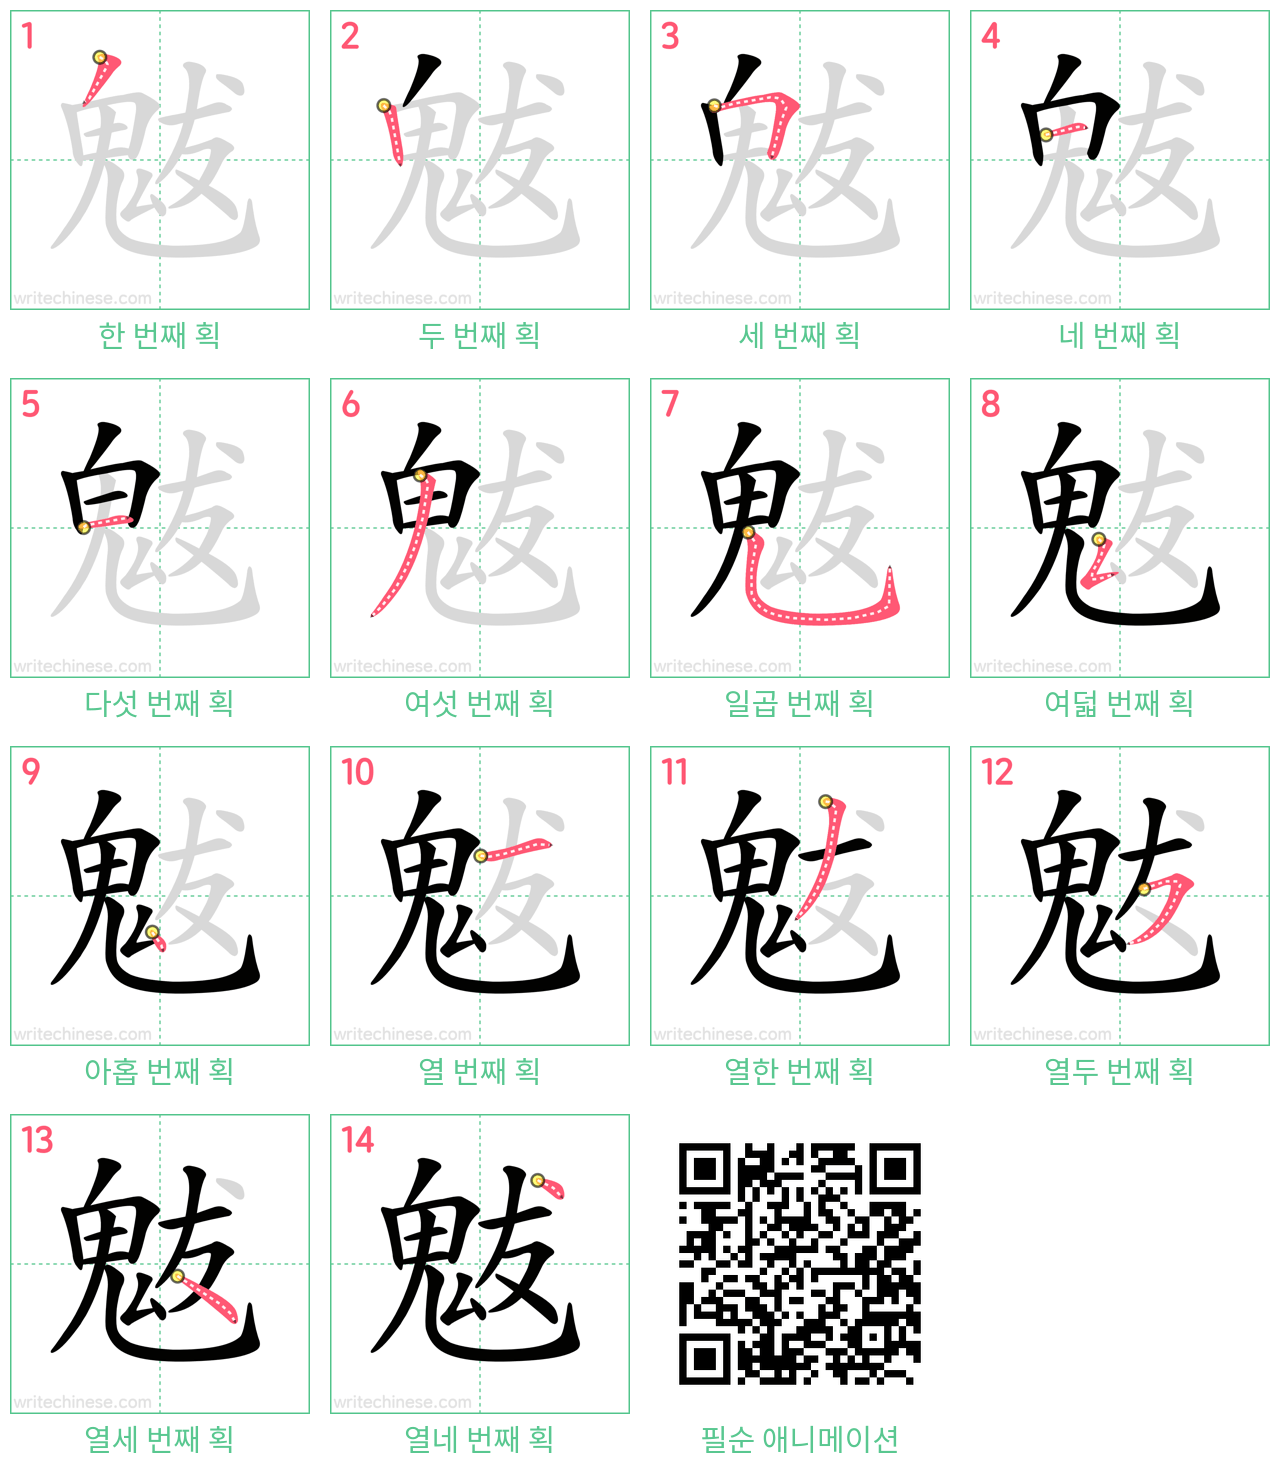 魃 step-by-step stroke order diagrams